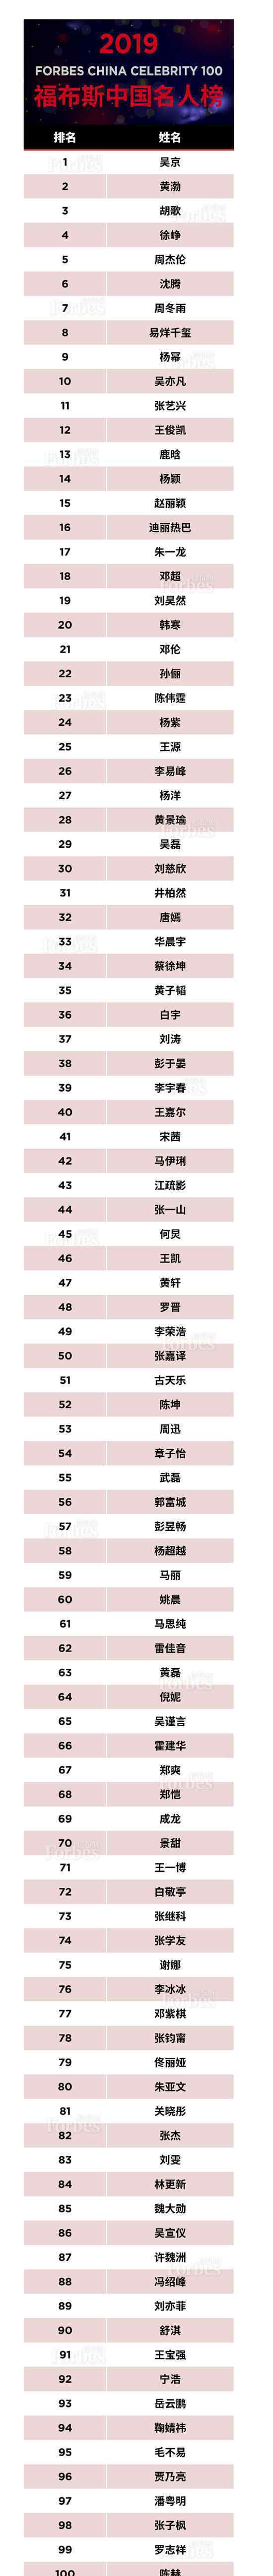 福布斯中国名人榜 2019年中国100名人榜榜单